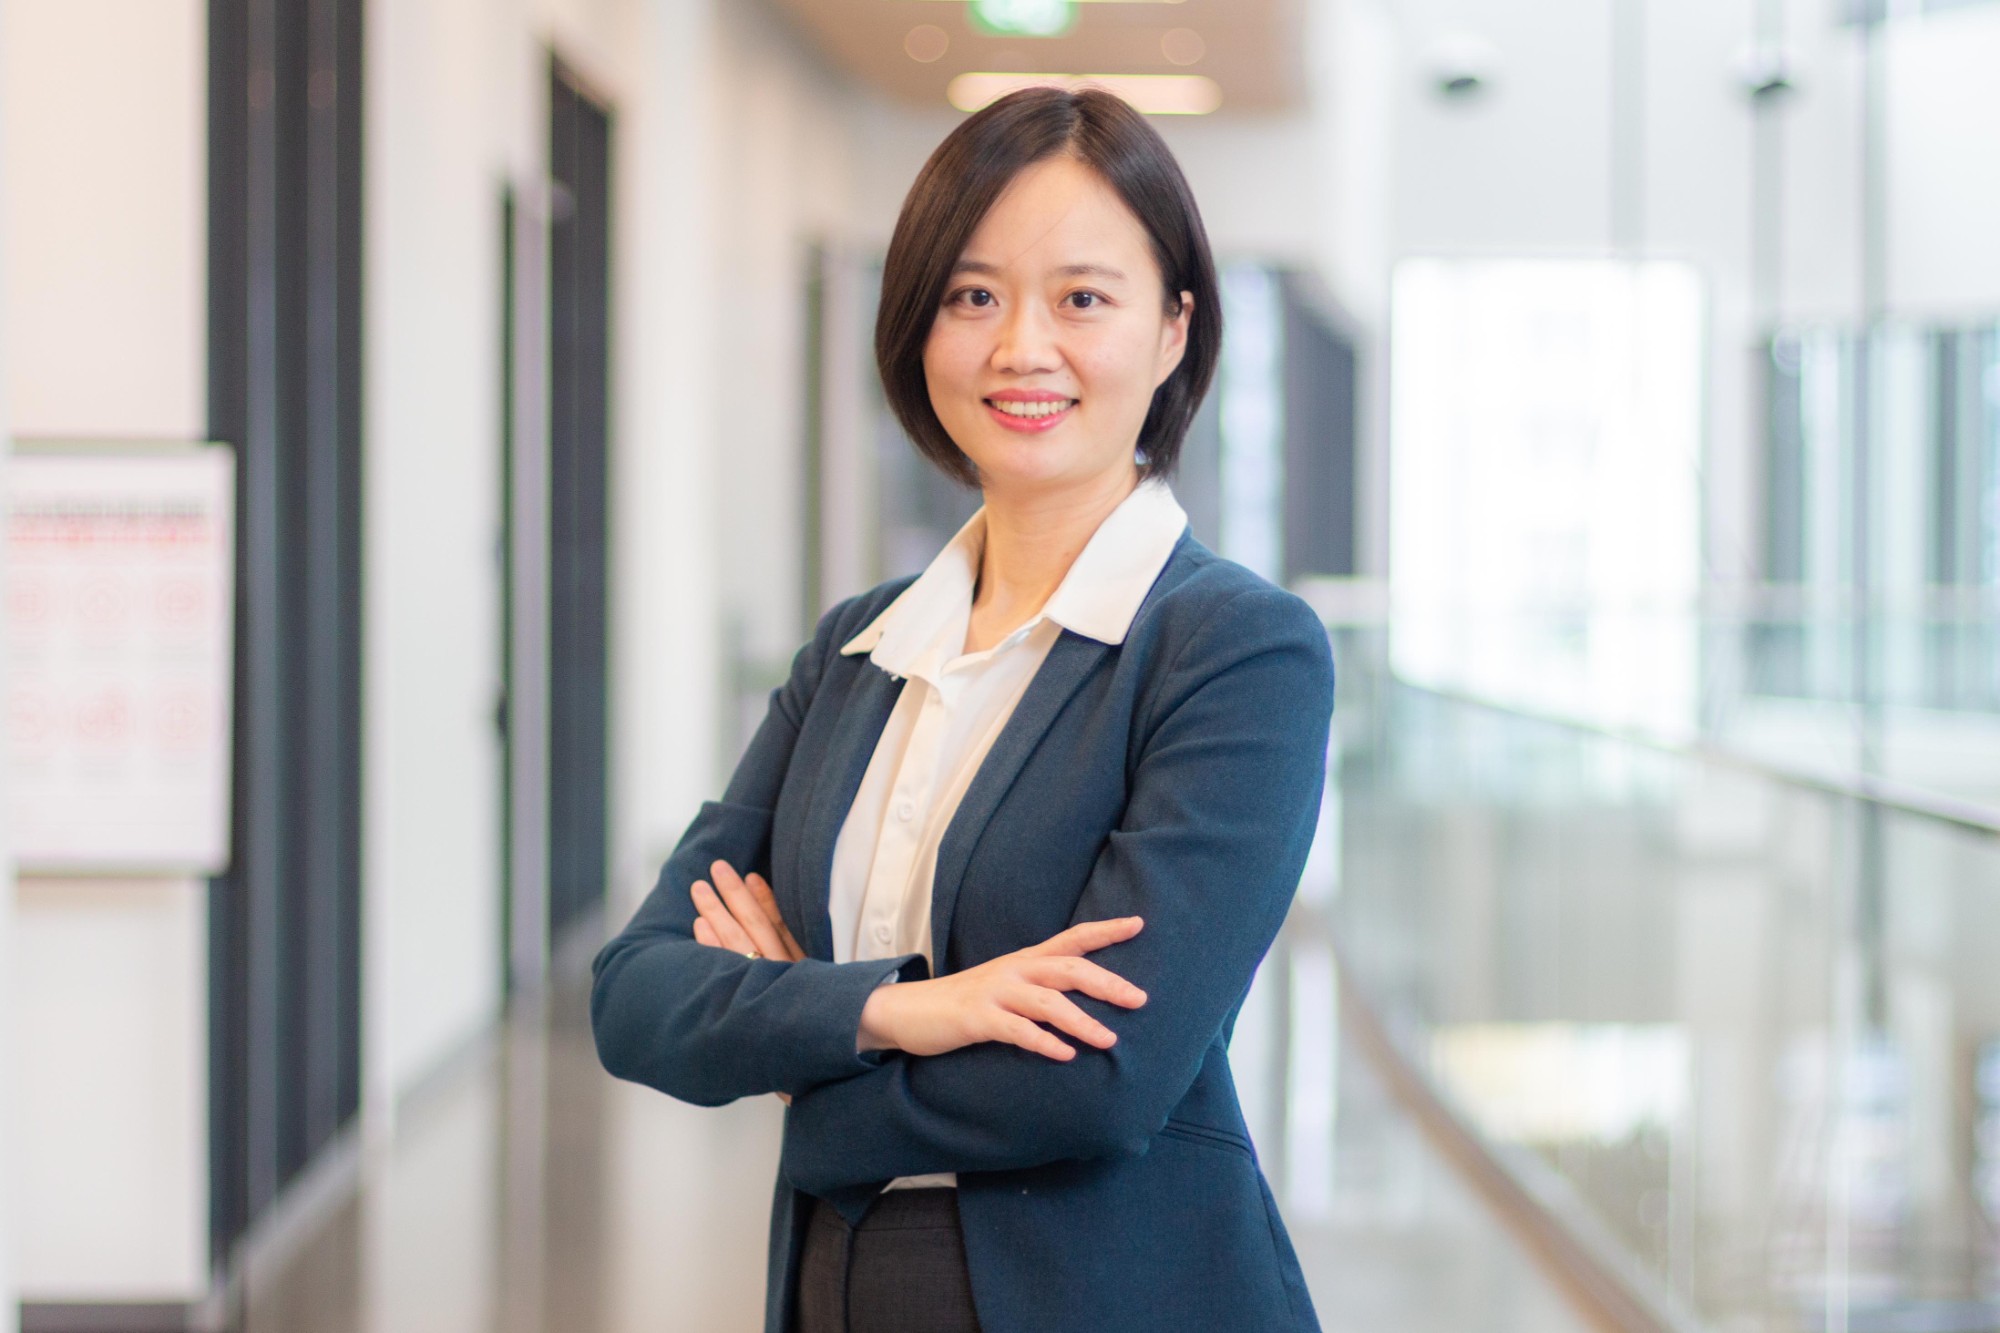 Meet Dr. Mina Xu